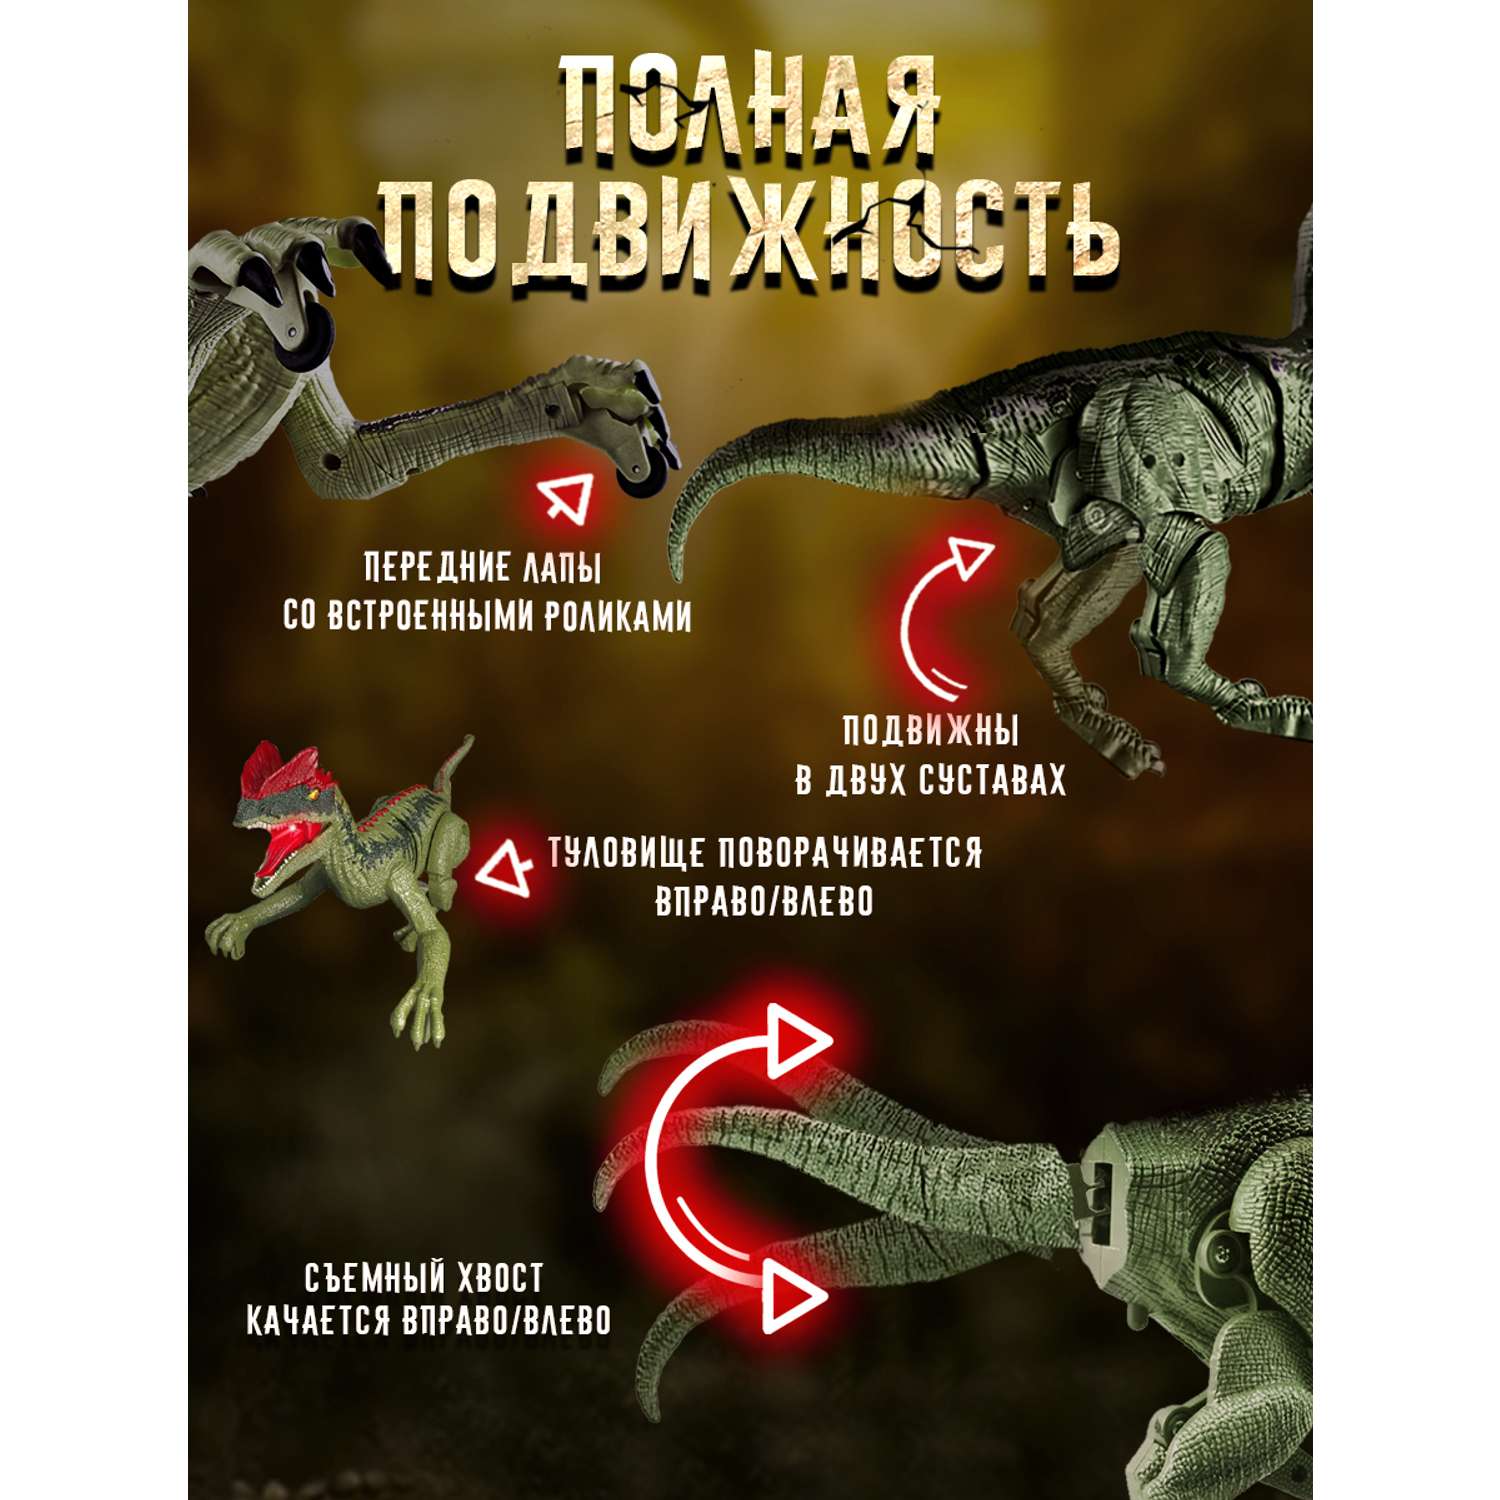 Интерактивная игрушка ТЕХНО шагающий динозавр хищник со светом - фото 3